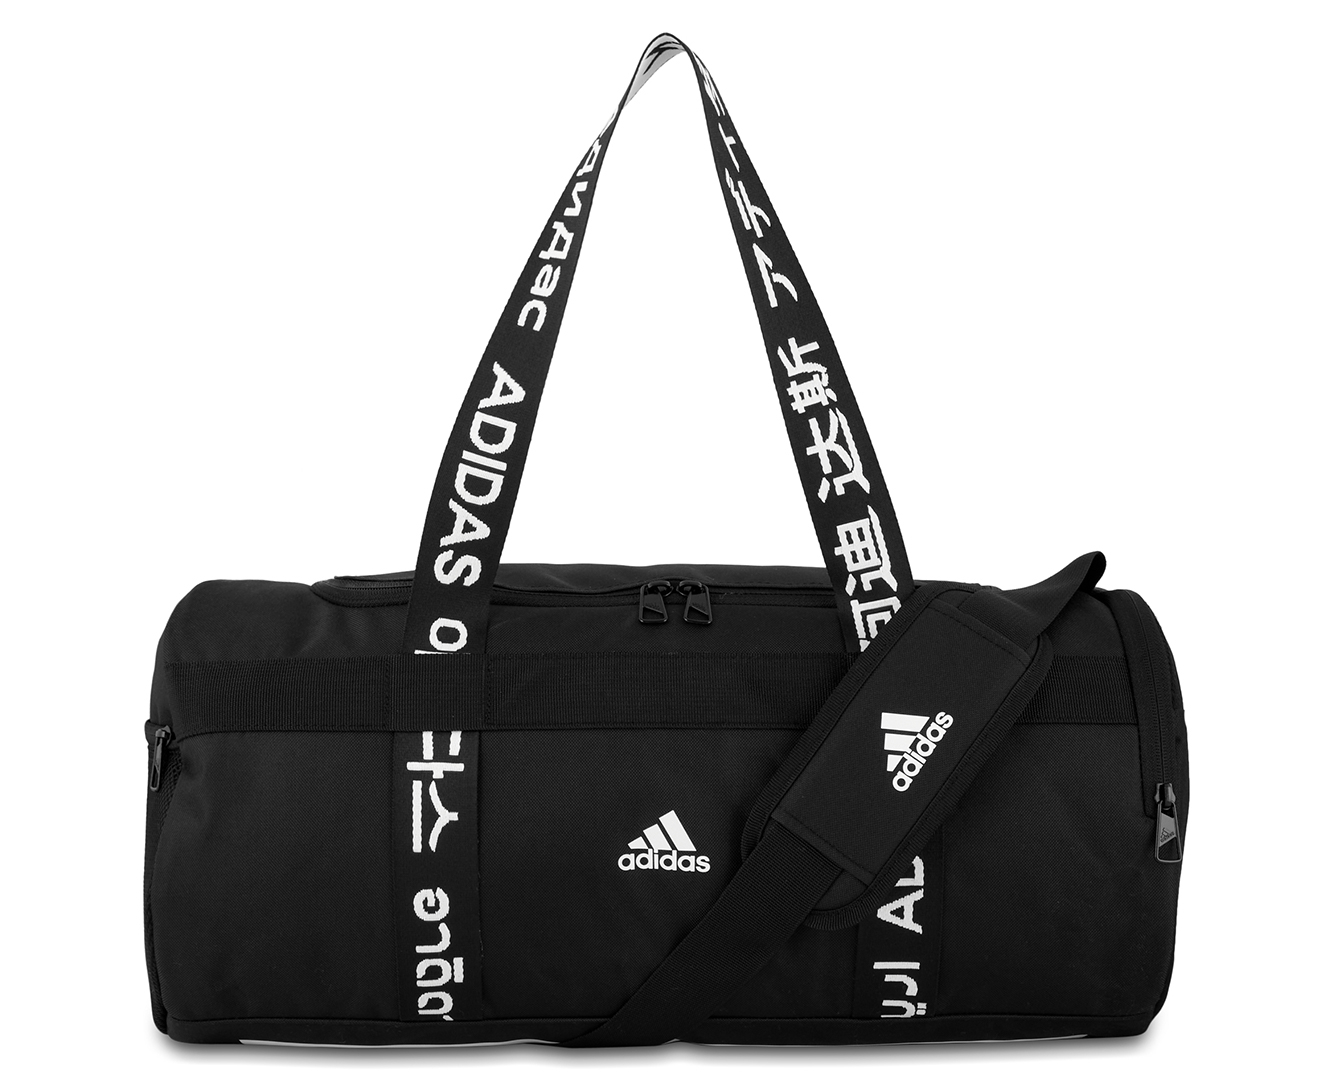 Adidas 21.5L Small 4ATHLTS Duffle Bag - Black/White | Catch.com.au